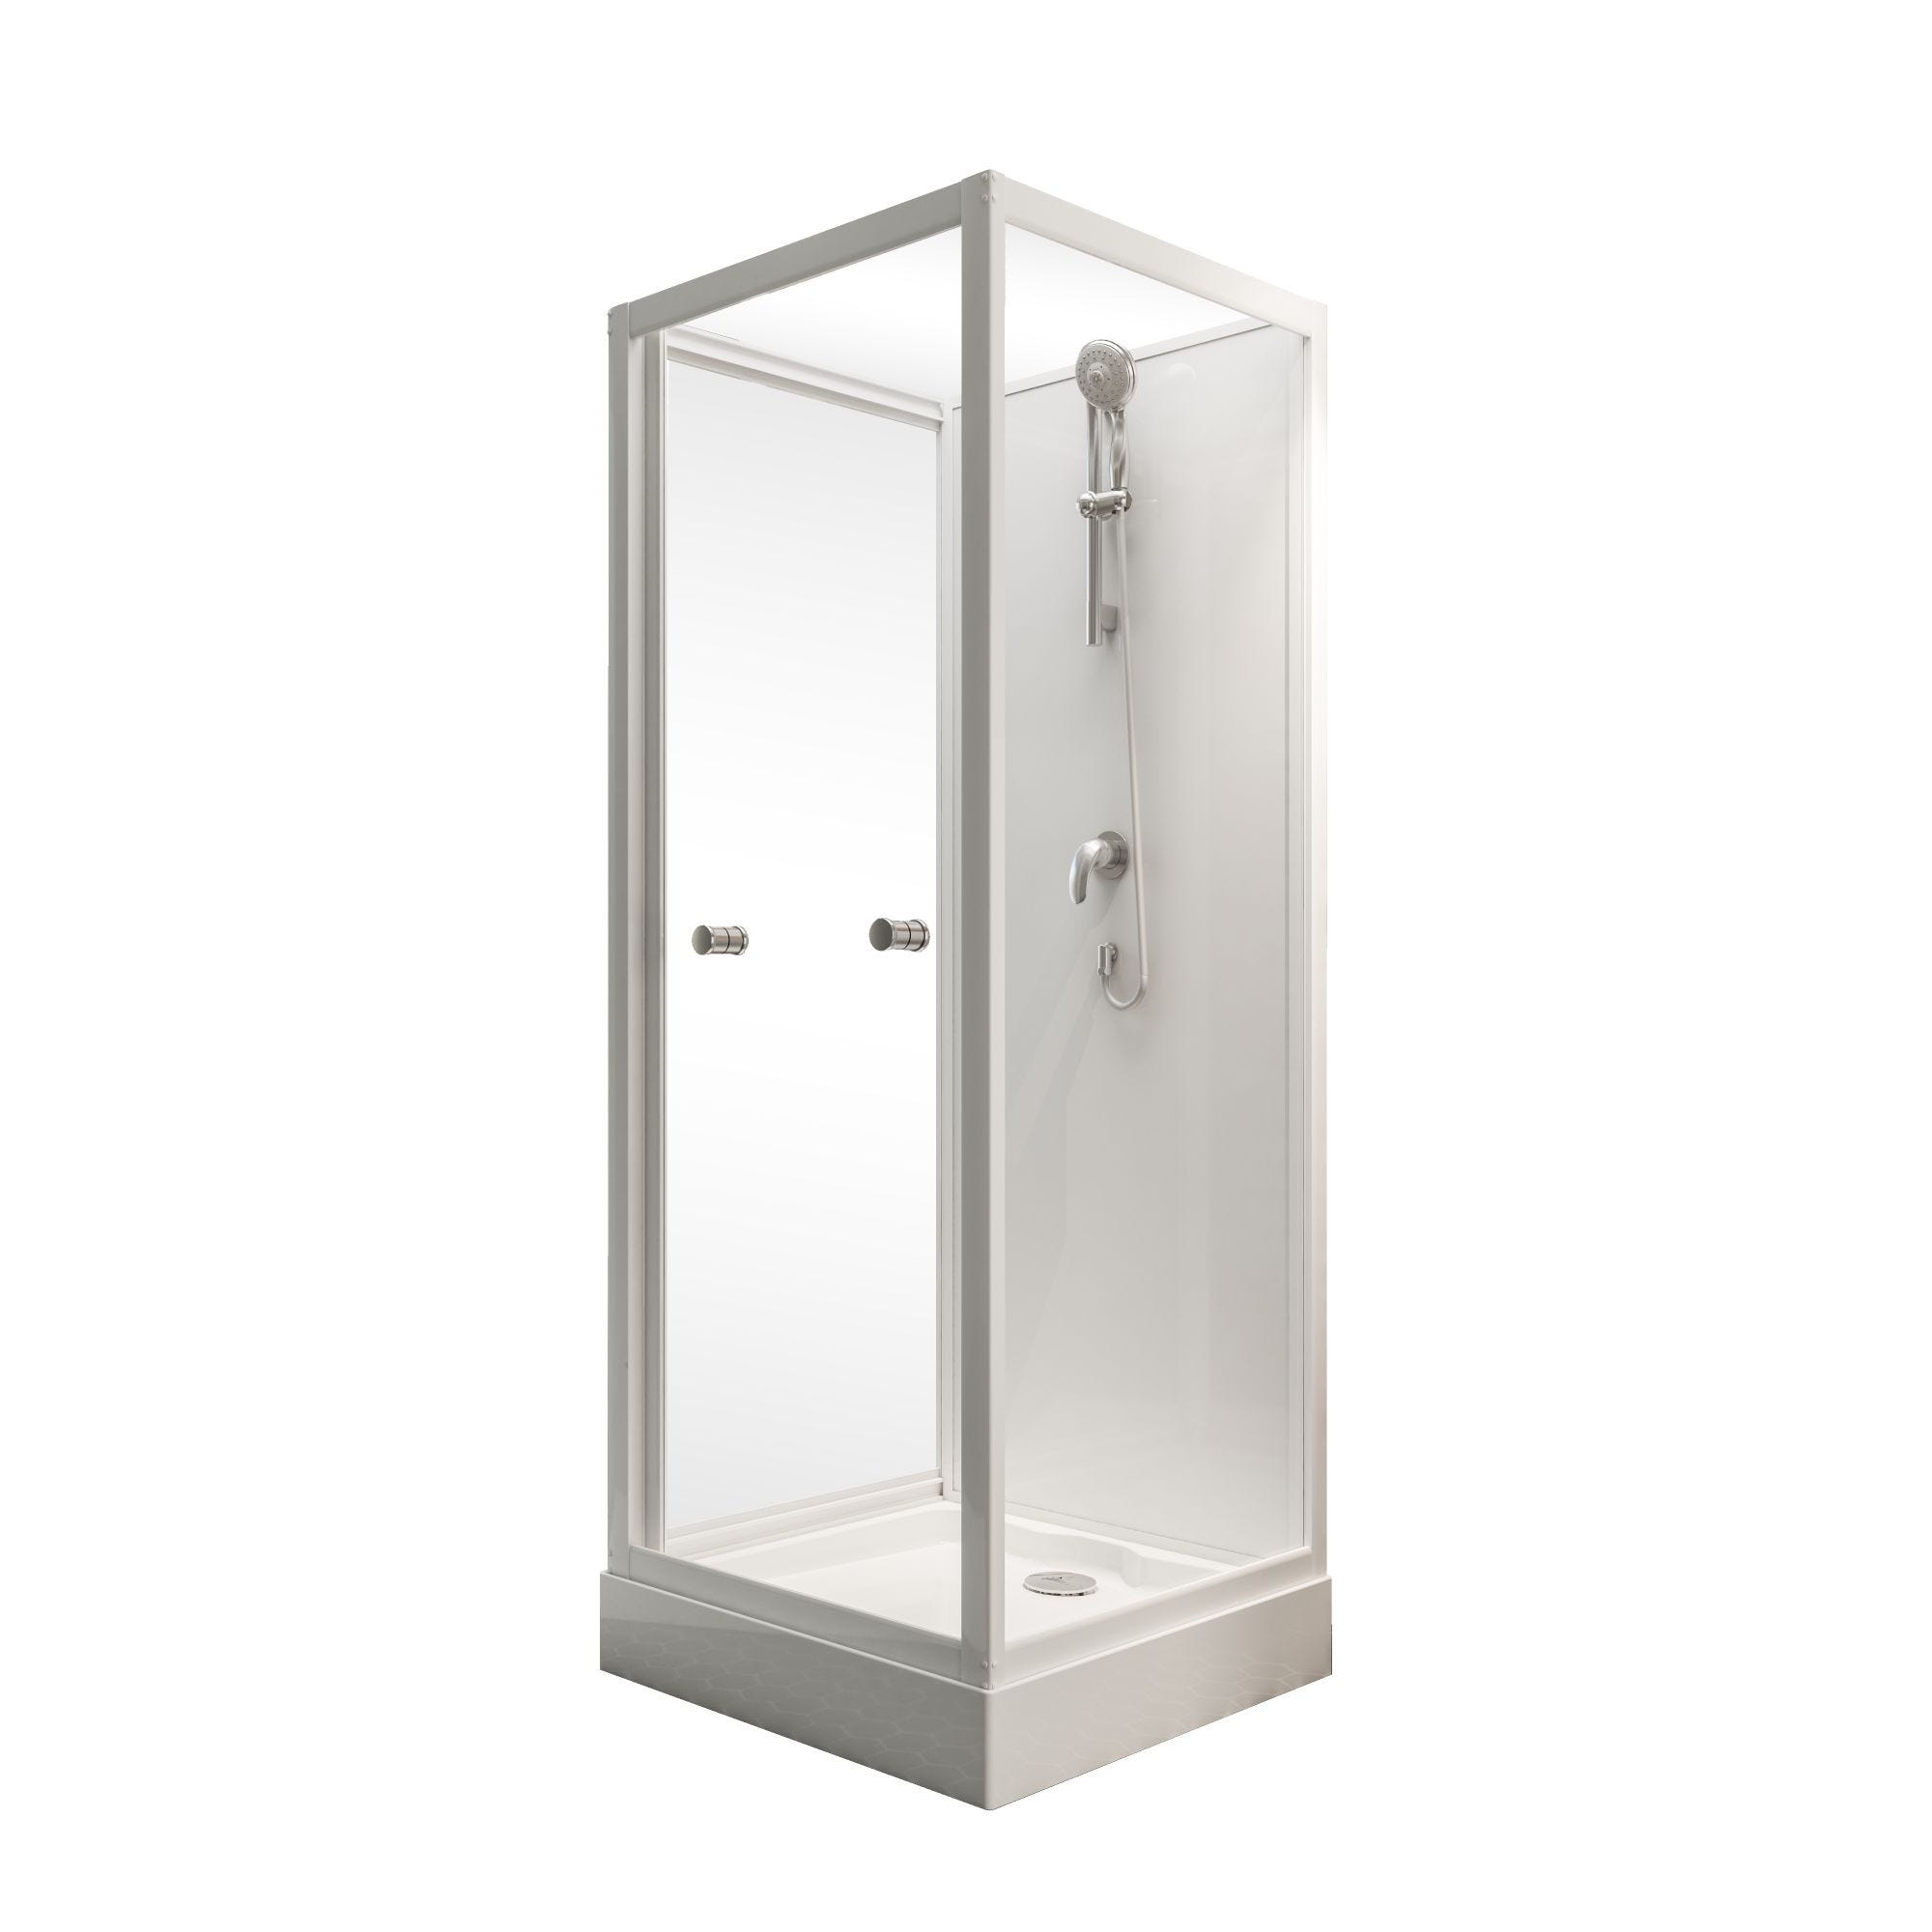 Schulte cabine de douche intégrale, 80 x 80 x 210 cm, verre de sécurité 5 mm, cabine de douche complète, blanc alpin, Juist II 1